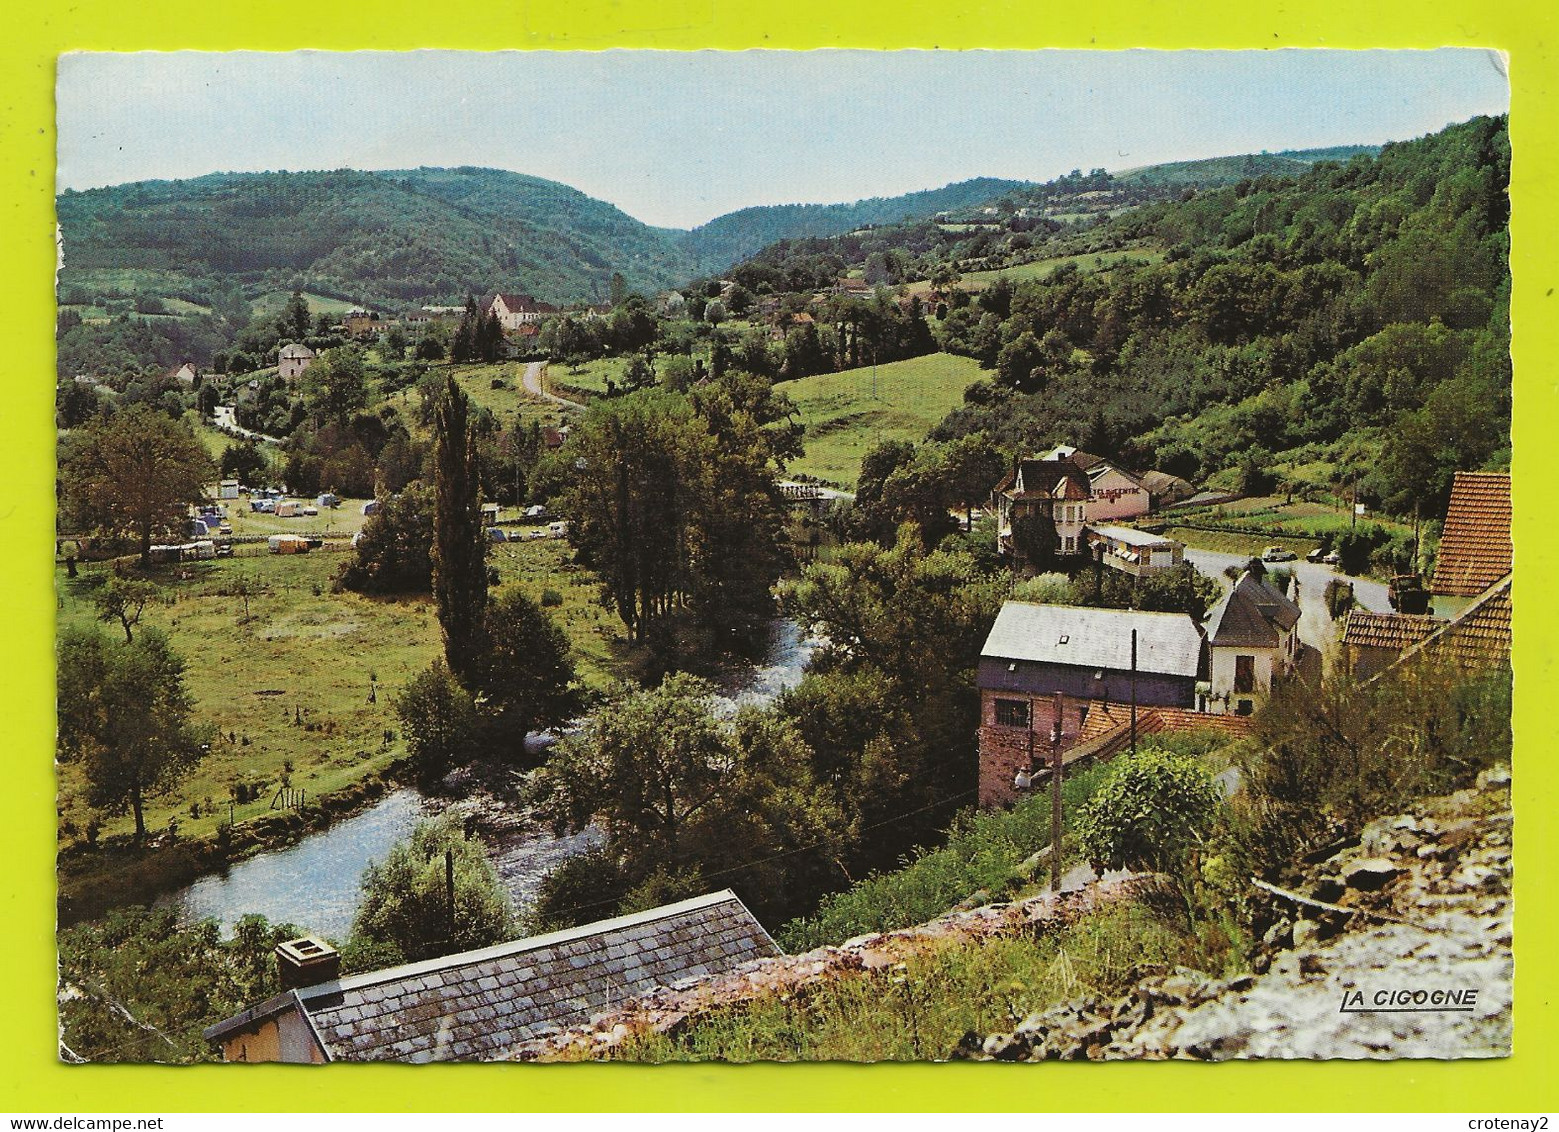 63 CHÂTEAUNEUF LES BAINS Vers St Gervais D'Auvergne N°100 10 La Sioule Camping Hôtels Du Centre Et De La Pergola En 1967 - Saint Gervais D'Auvergne